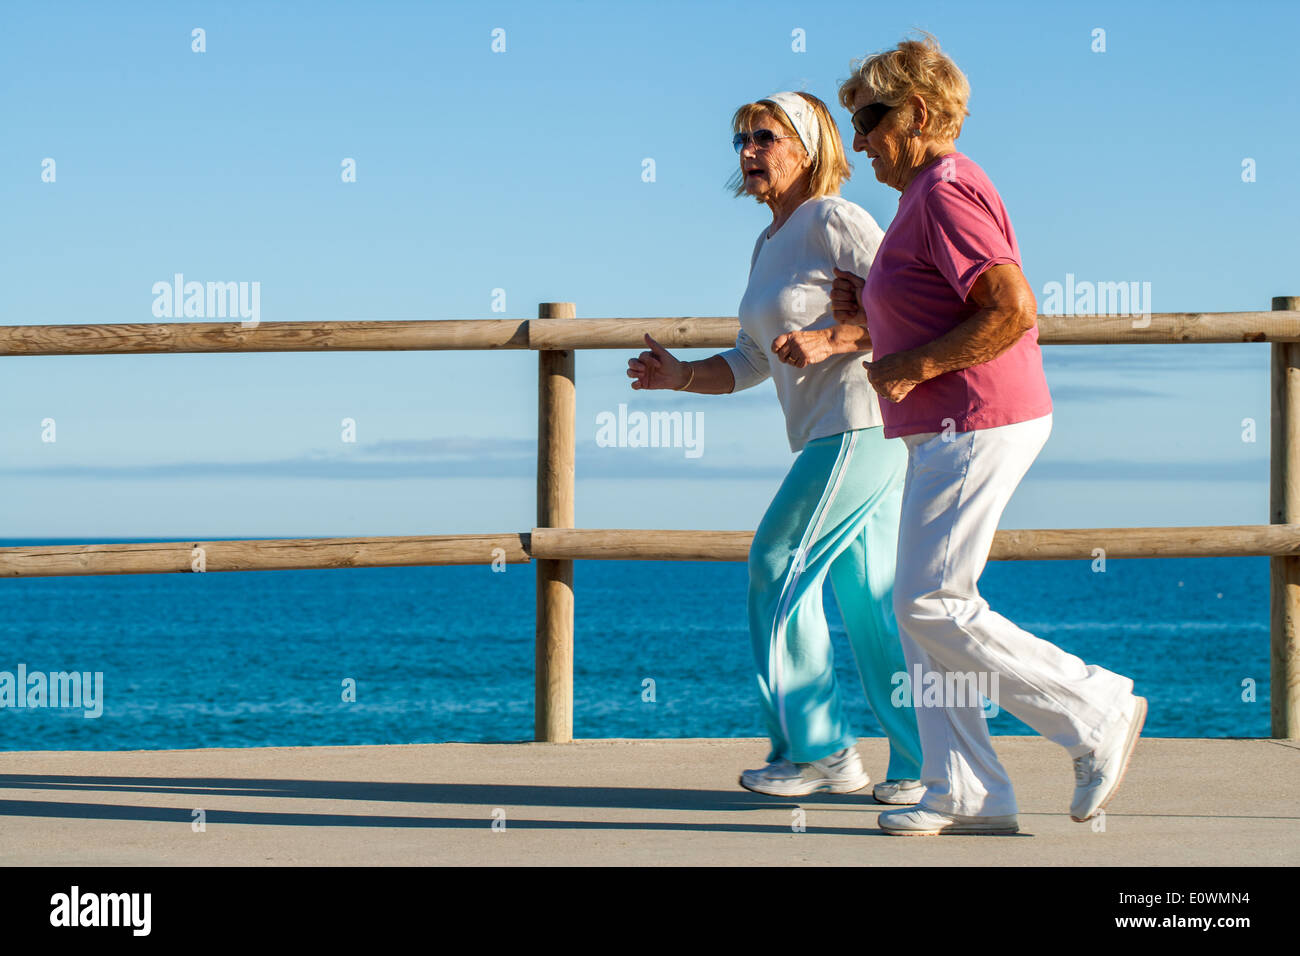 Aktion-Porträt älterer Frauen Joggen im freien zusammen. Stockfoto